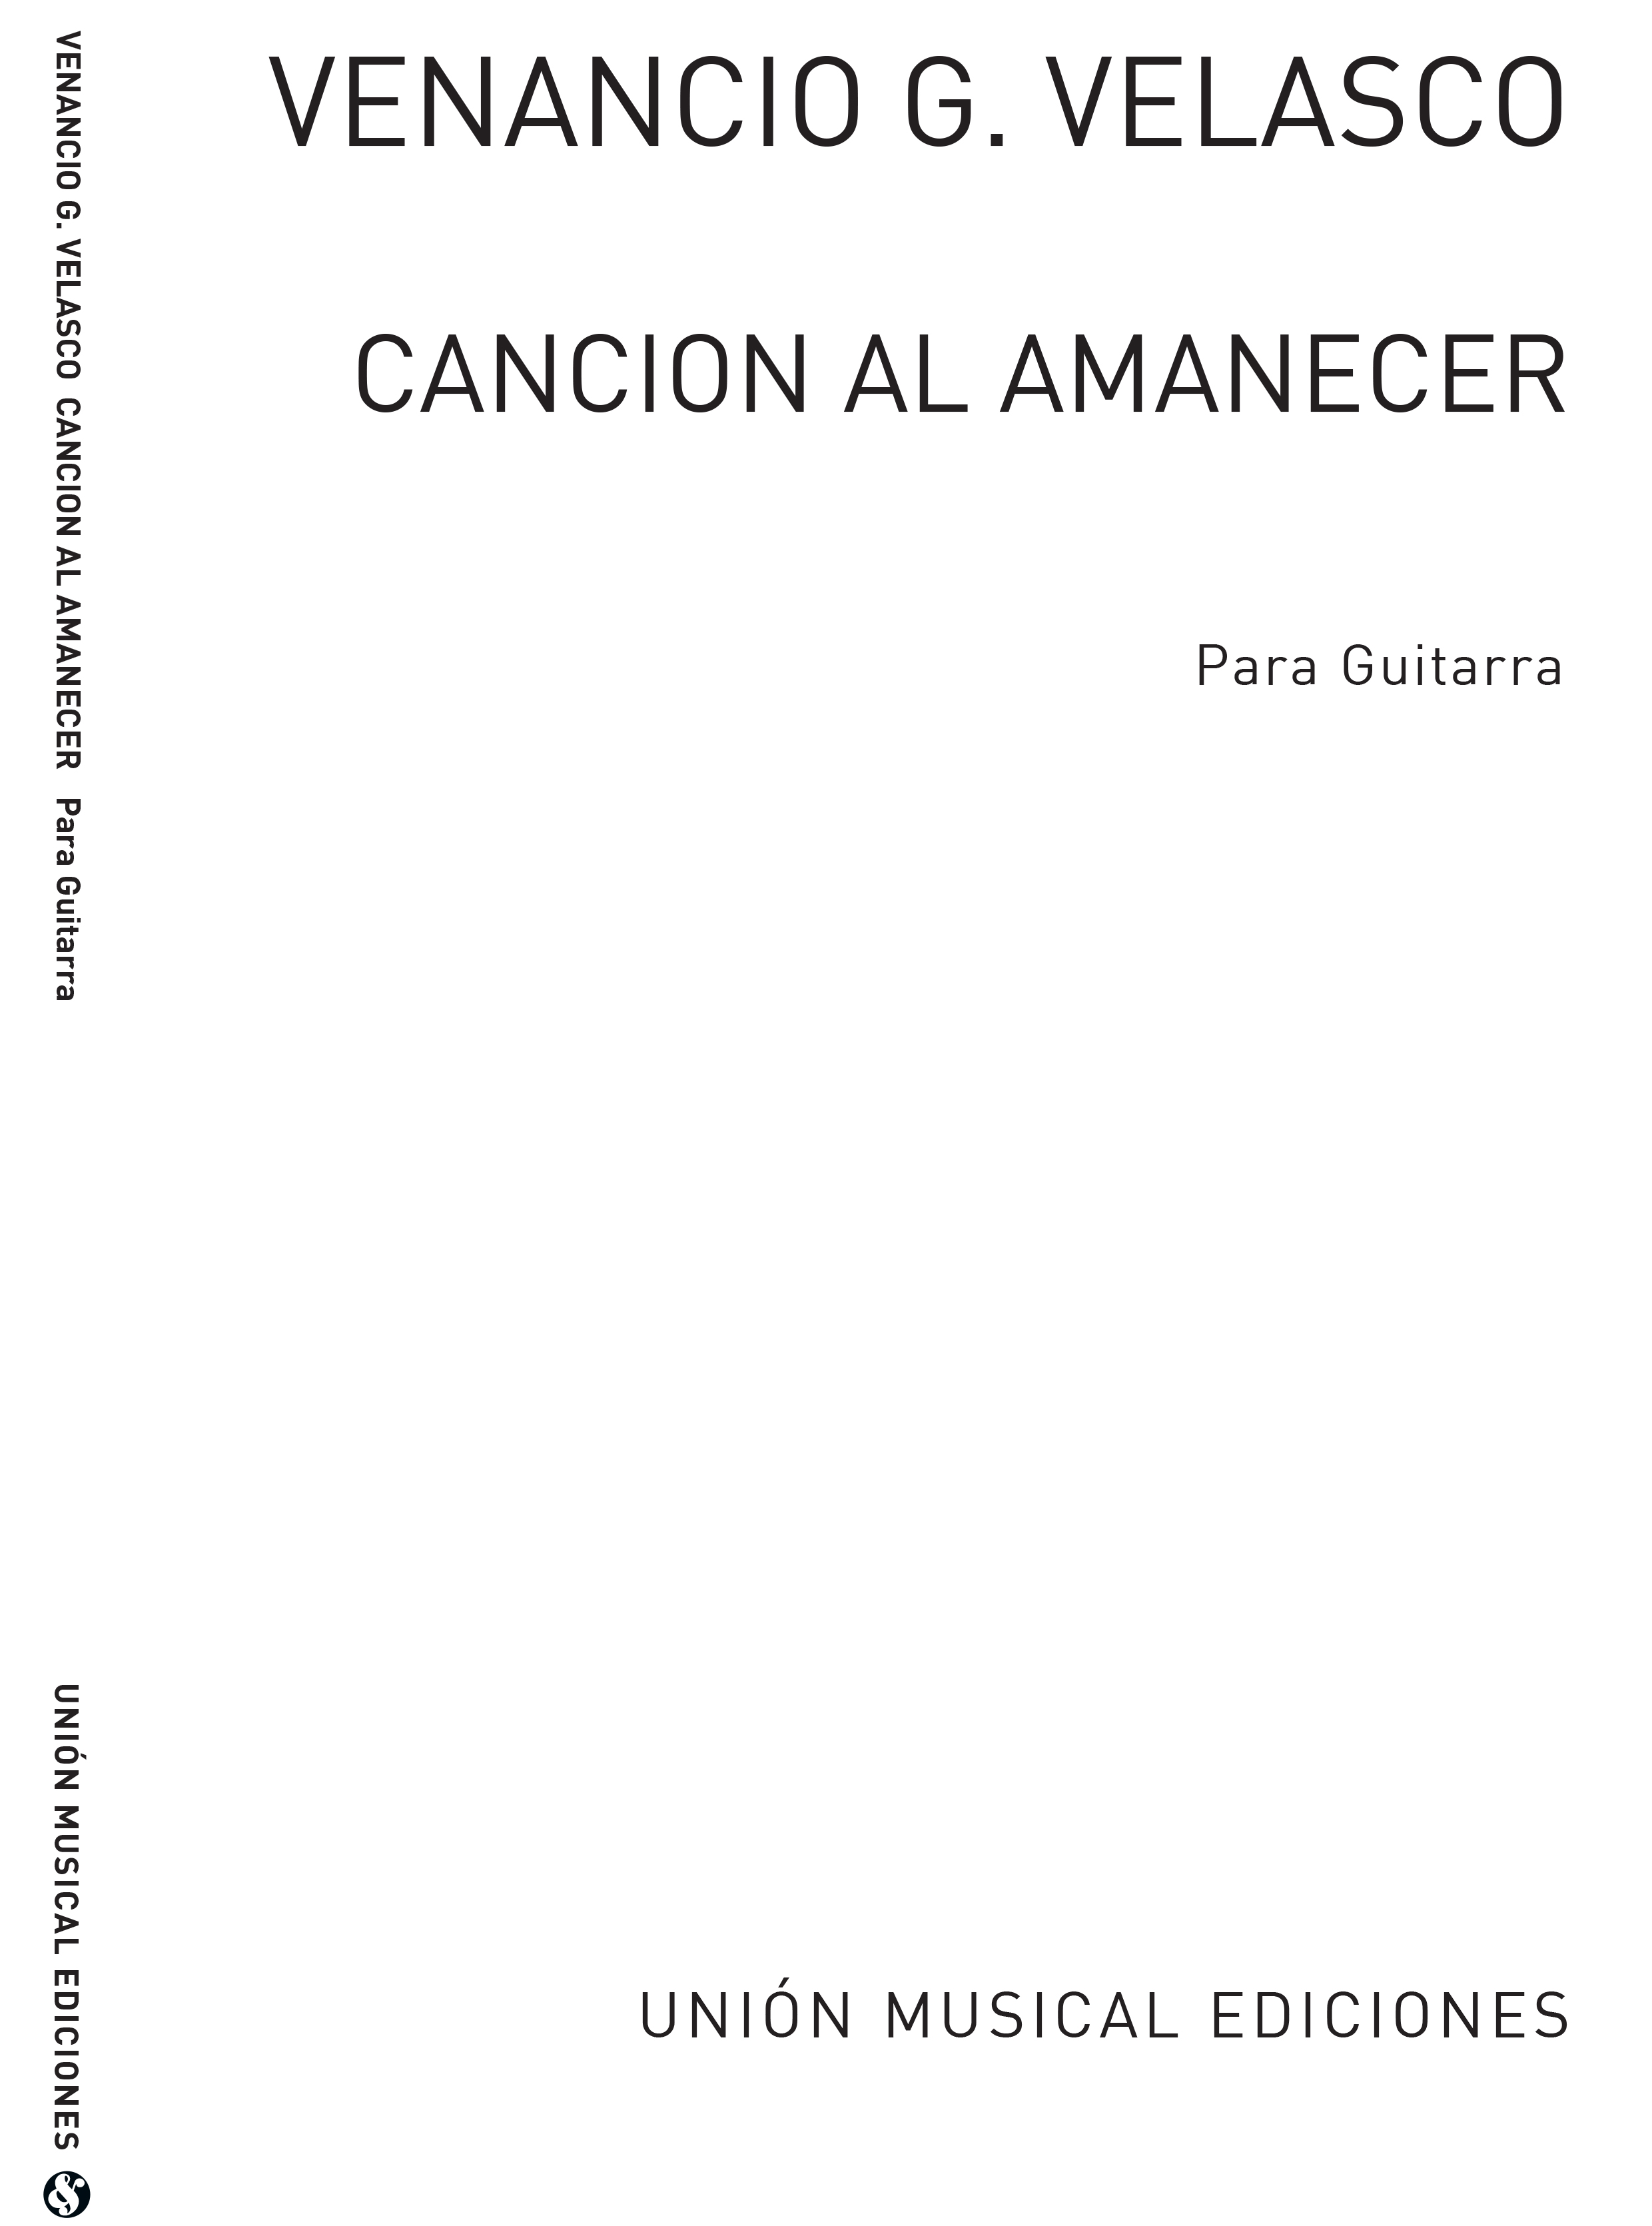 Venancio Garcia Velasco: Cancion Al Amanecer: Guitar: Instrumental Work